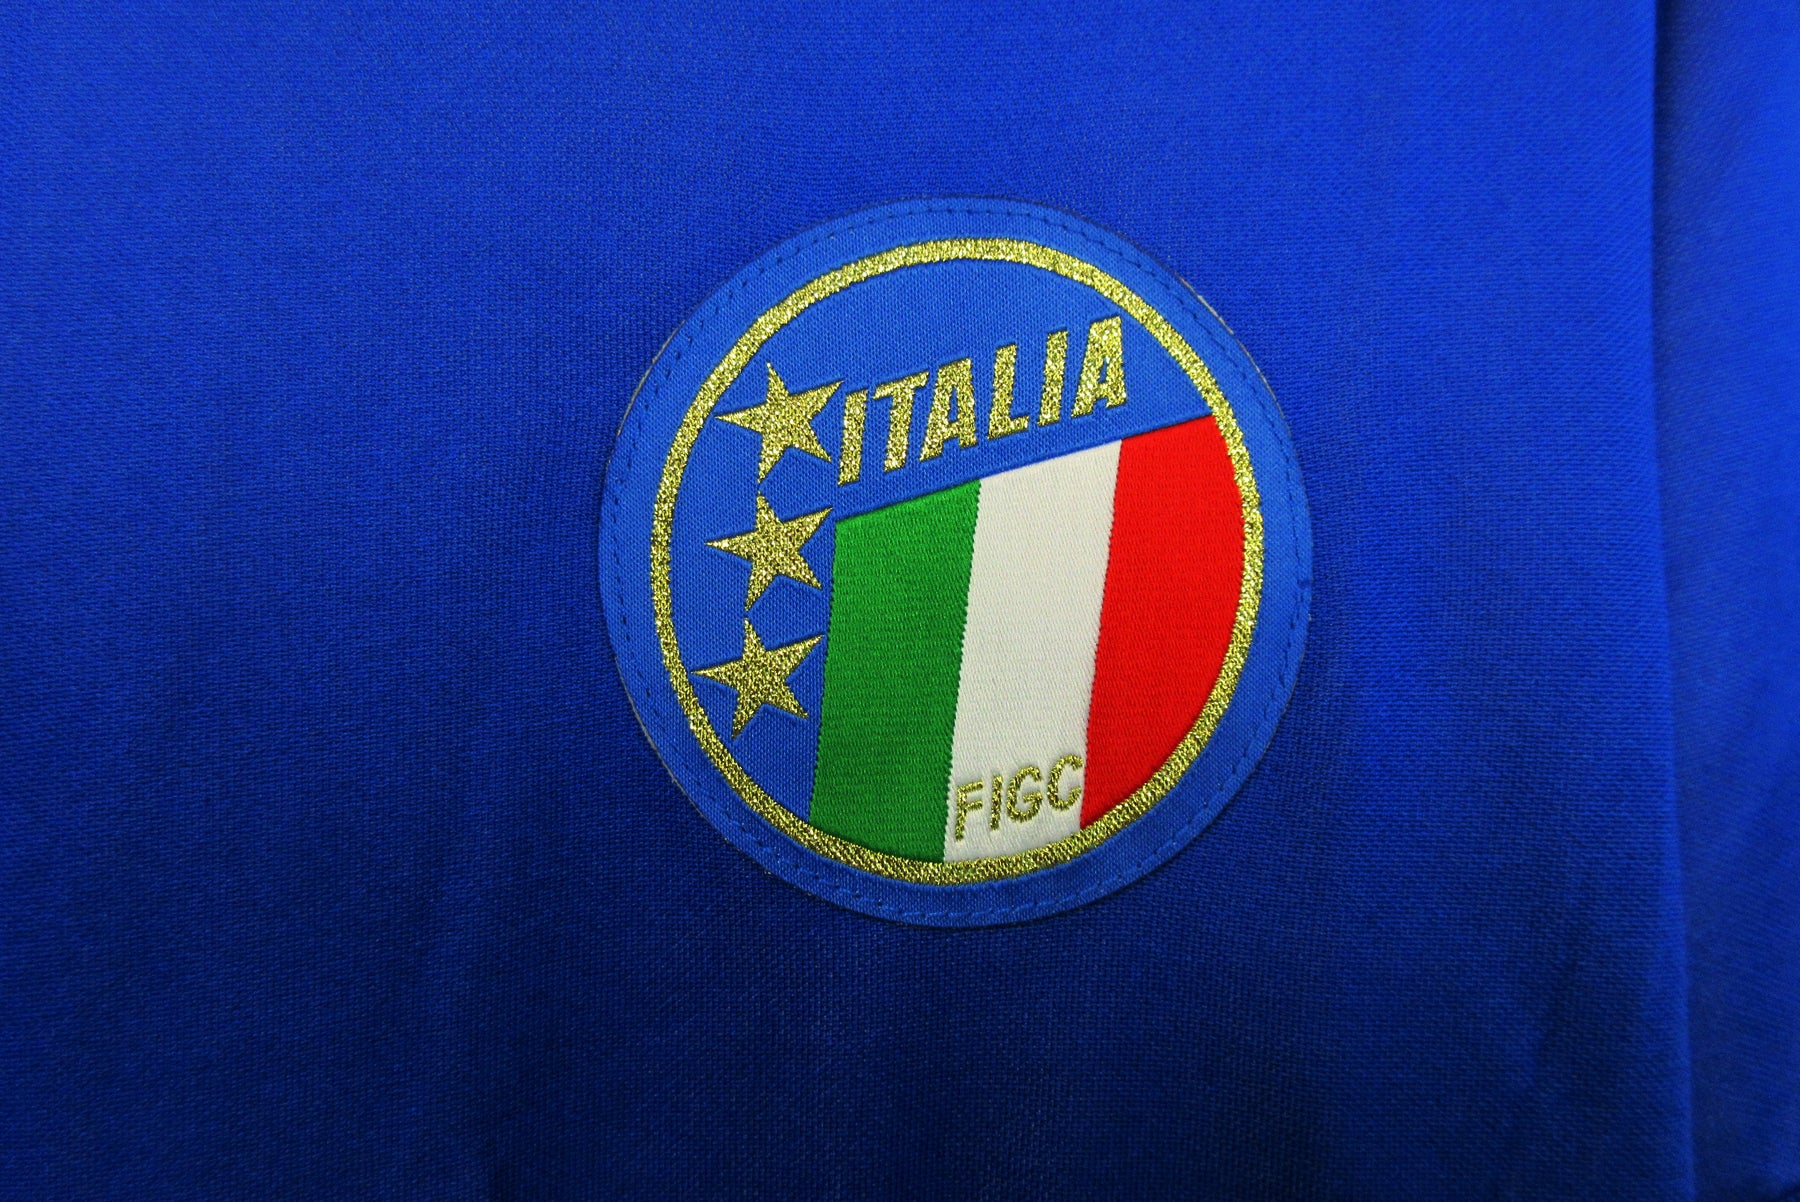 Italy 1990 Home Retro Shirt